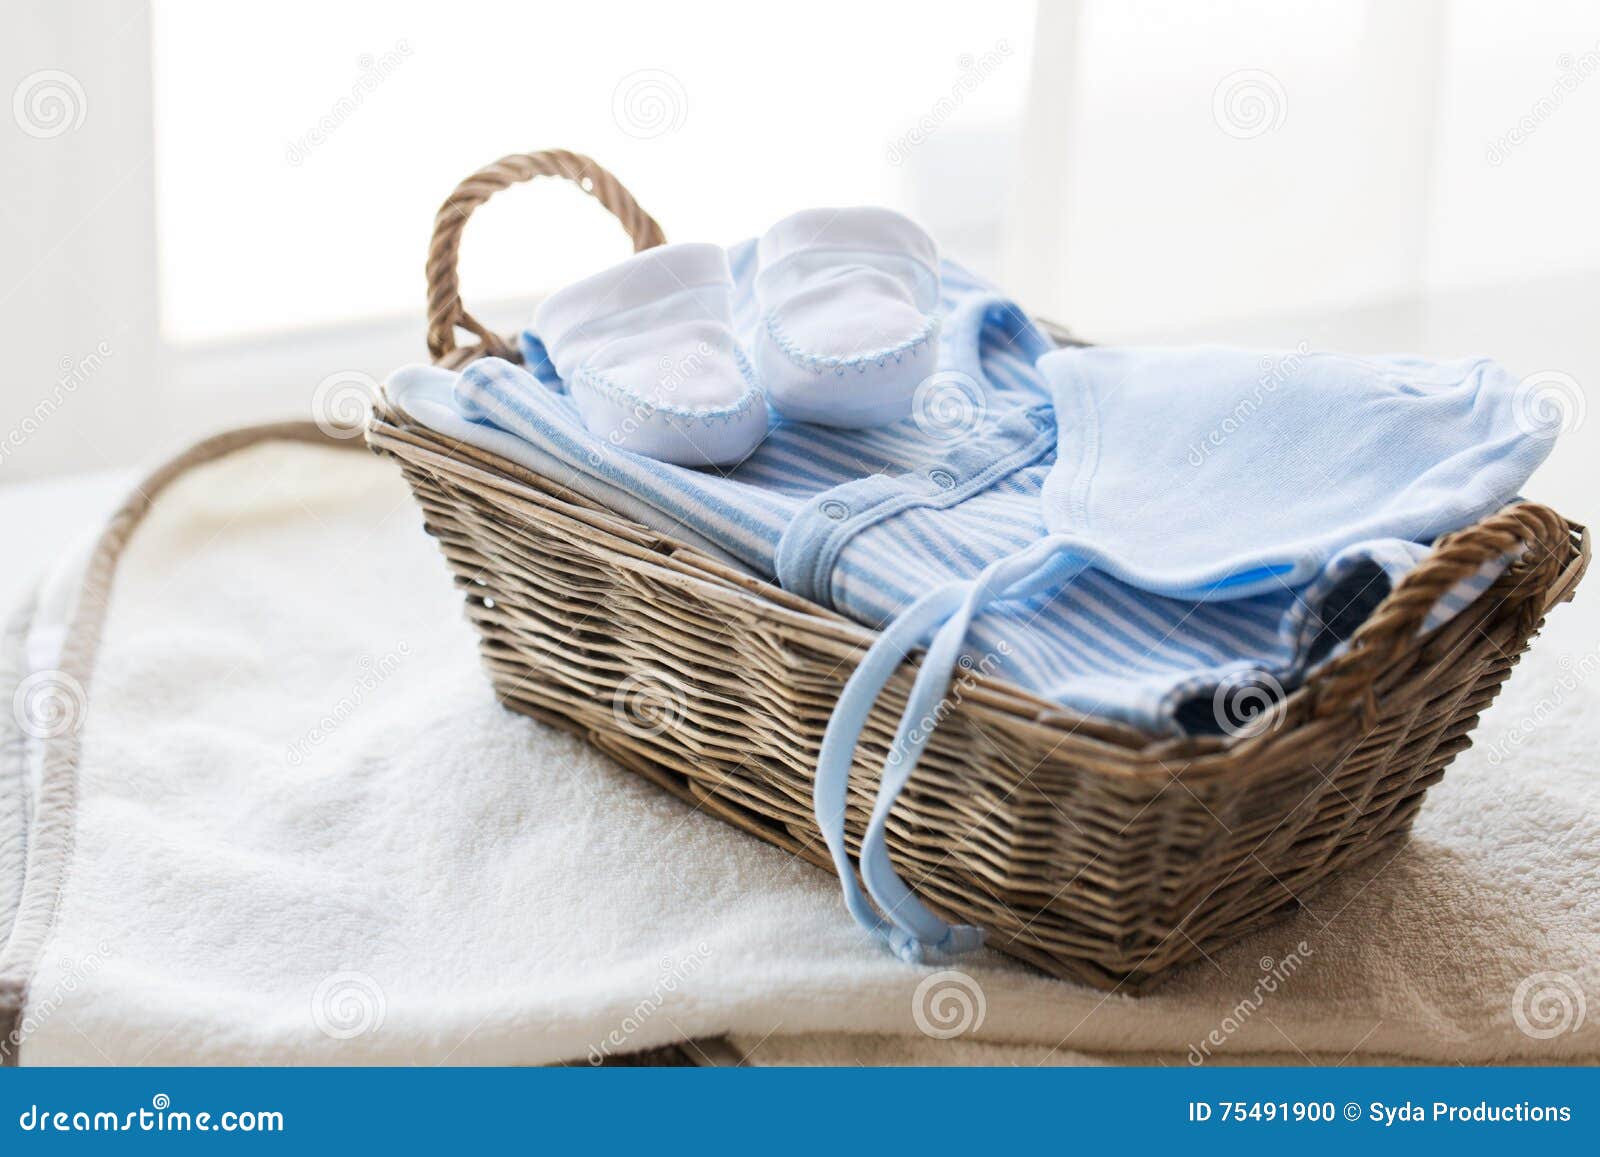 Feche acima da roupa do bebê para o menino recém-nascido na cesta. Roupa, primeira infância, maternidade e conceito do objeto - próximo acima dos sapatinhos de lã brancos do bebê com a pilha da roupa e da toalha para o menino recém-nascido na cesta na tabela